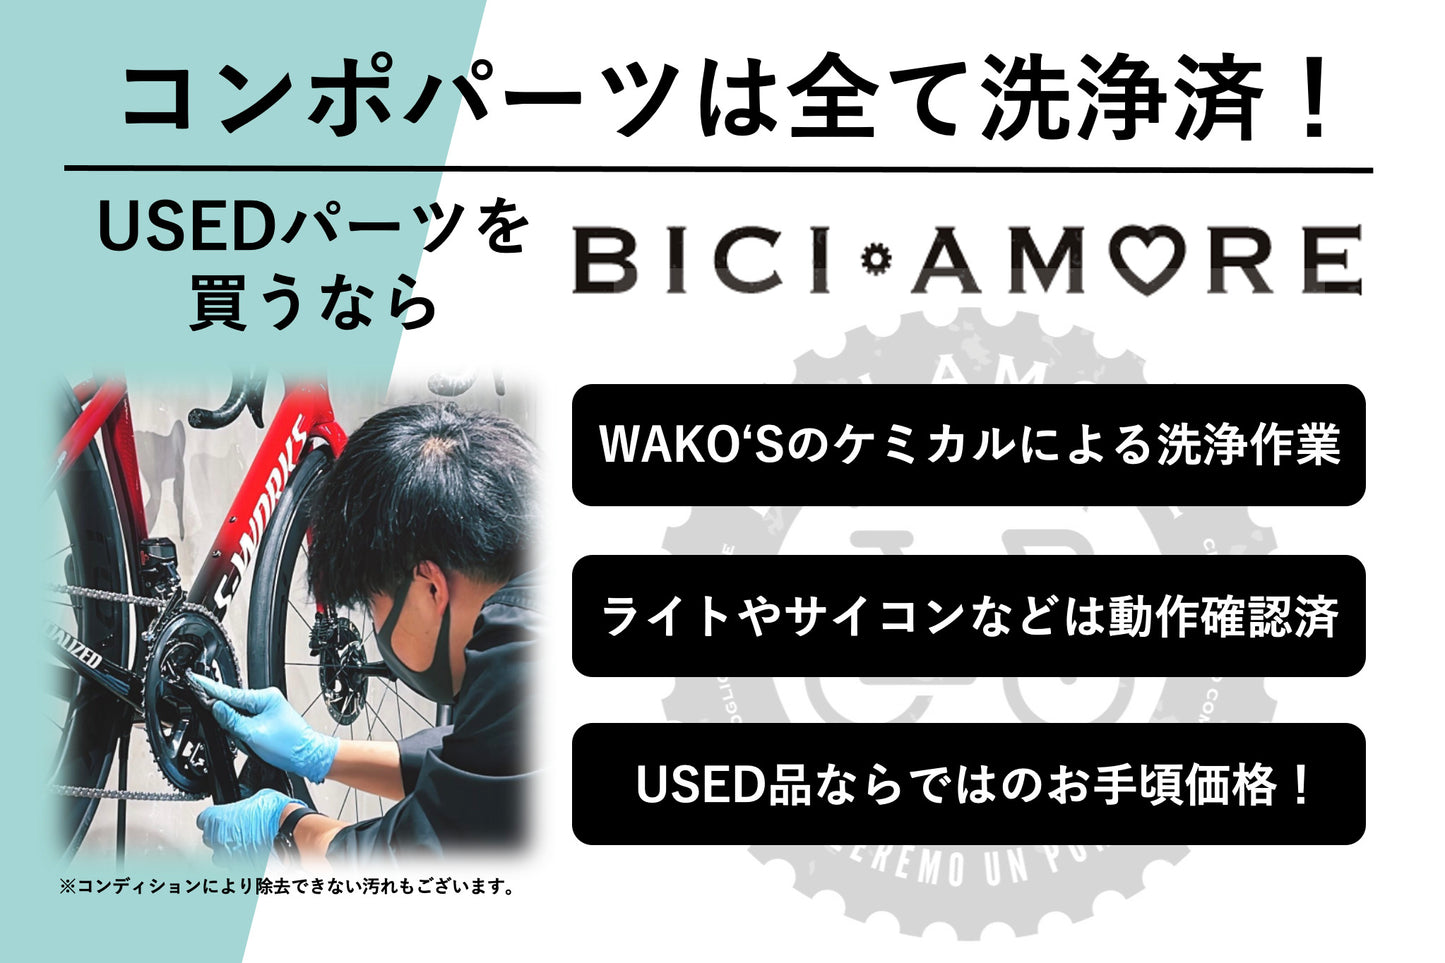 HN015 シマノ SHIMANO 105 PD-R7000 ビンディングペダル SPD-SL